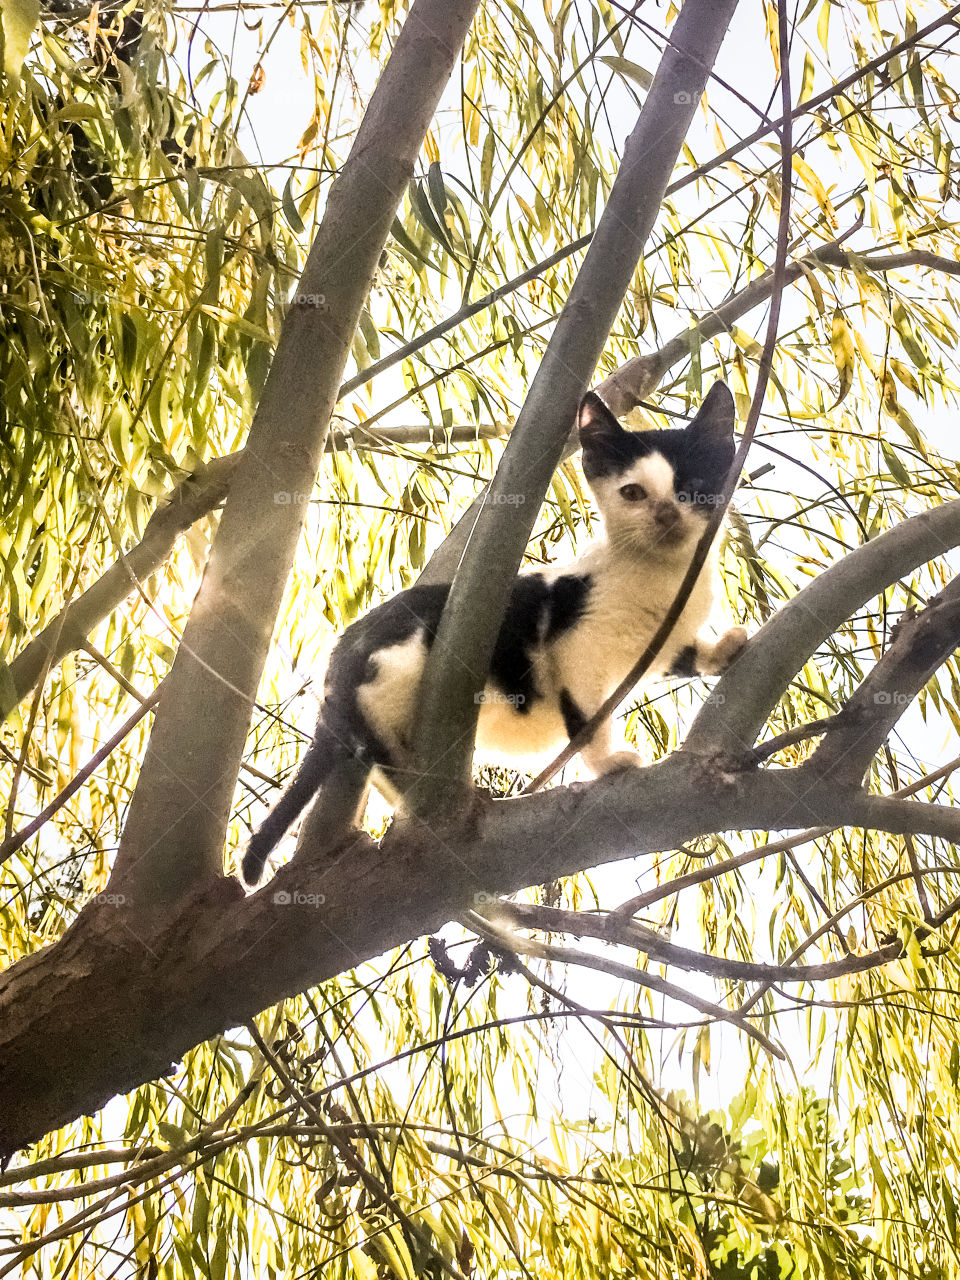 Kitten Climbing On The Tree
